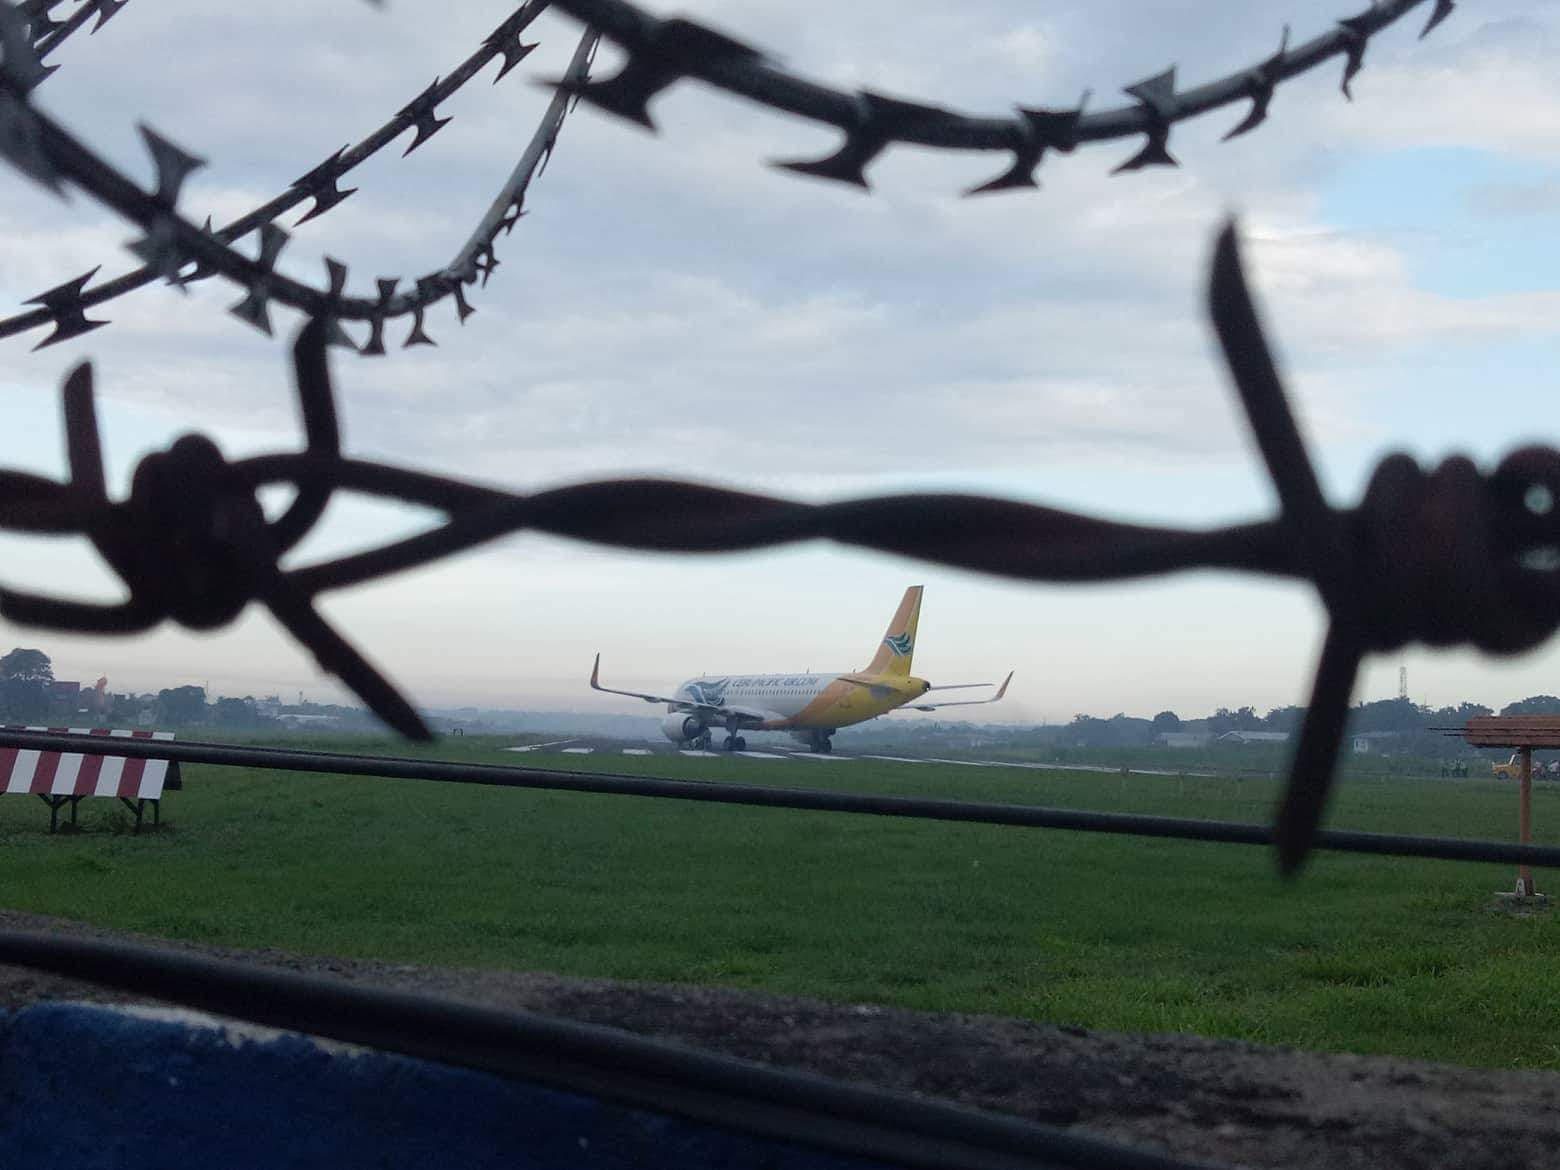 Zamboanga International Airport runway closed temporarily due to stalled plane